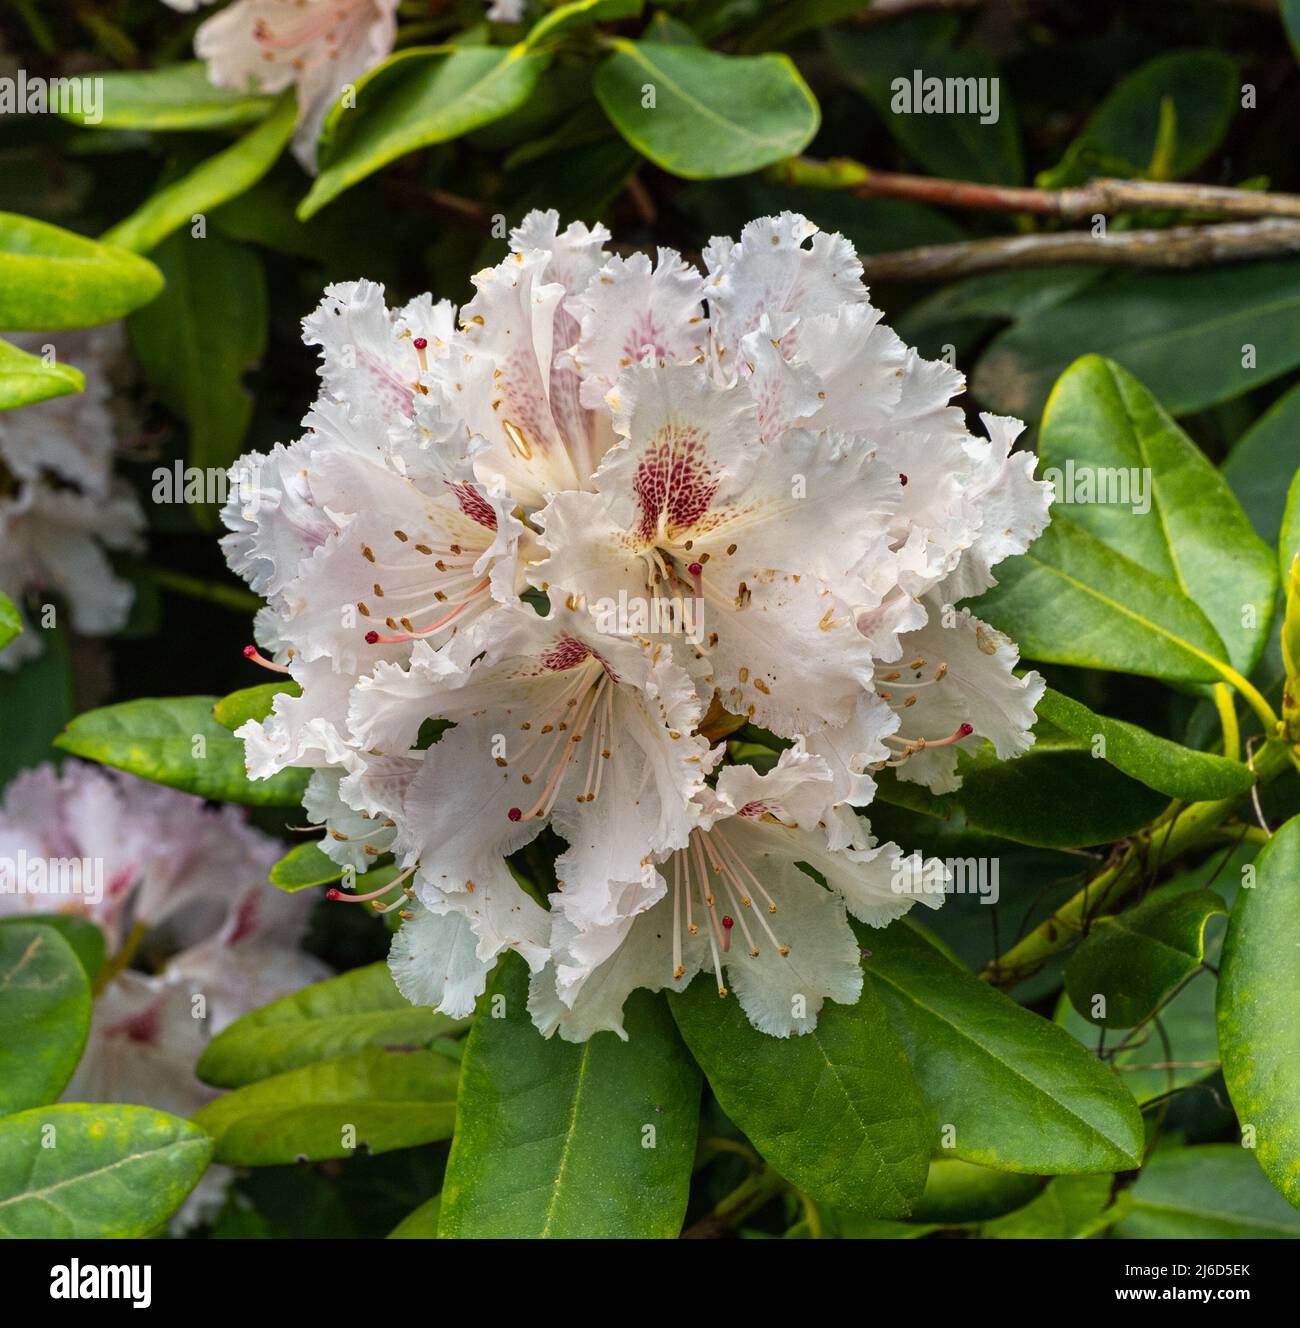 Primo piano dei fiori di rododendro. Baden-Baden, Baden Wuerttemberg, Germania Foto Stock